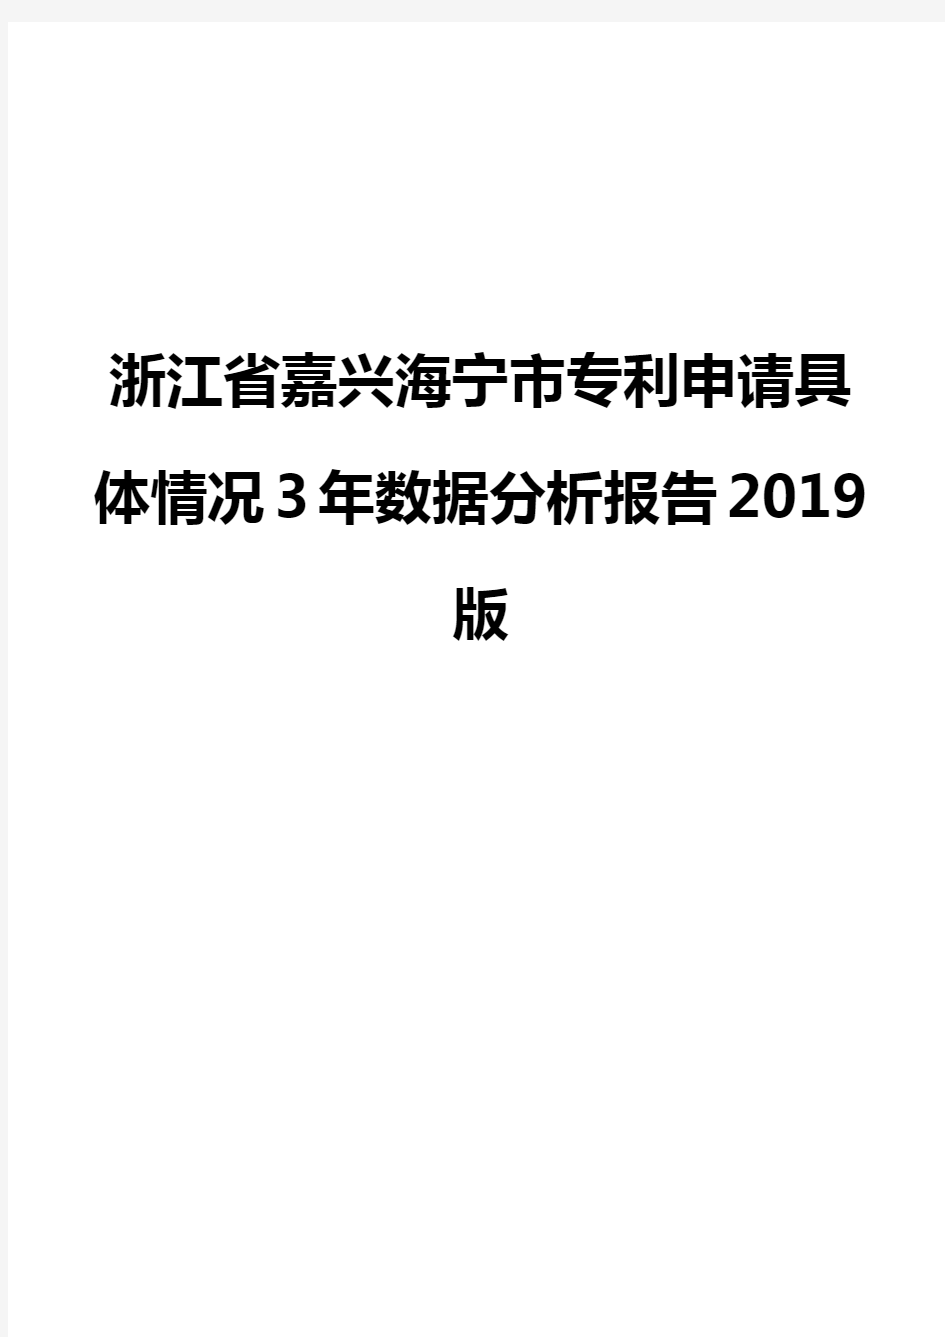 浙江省嘉兴海宁市专利申请具体情况3年数据分析报告2019版